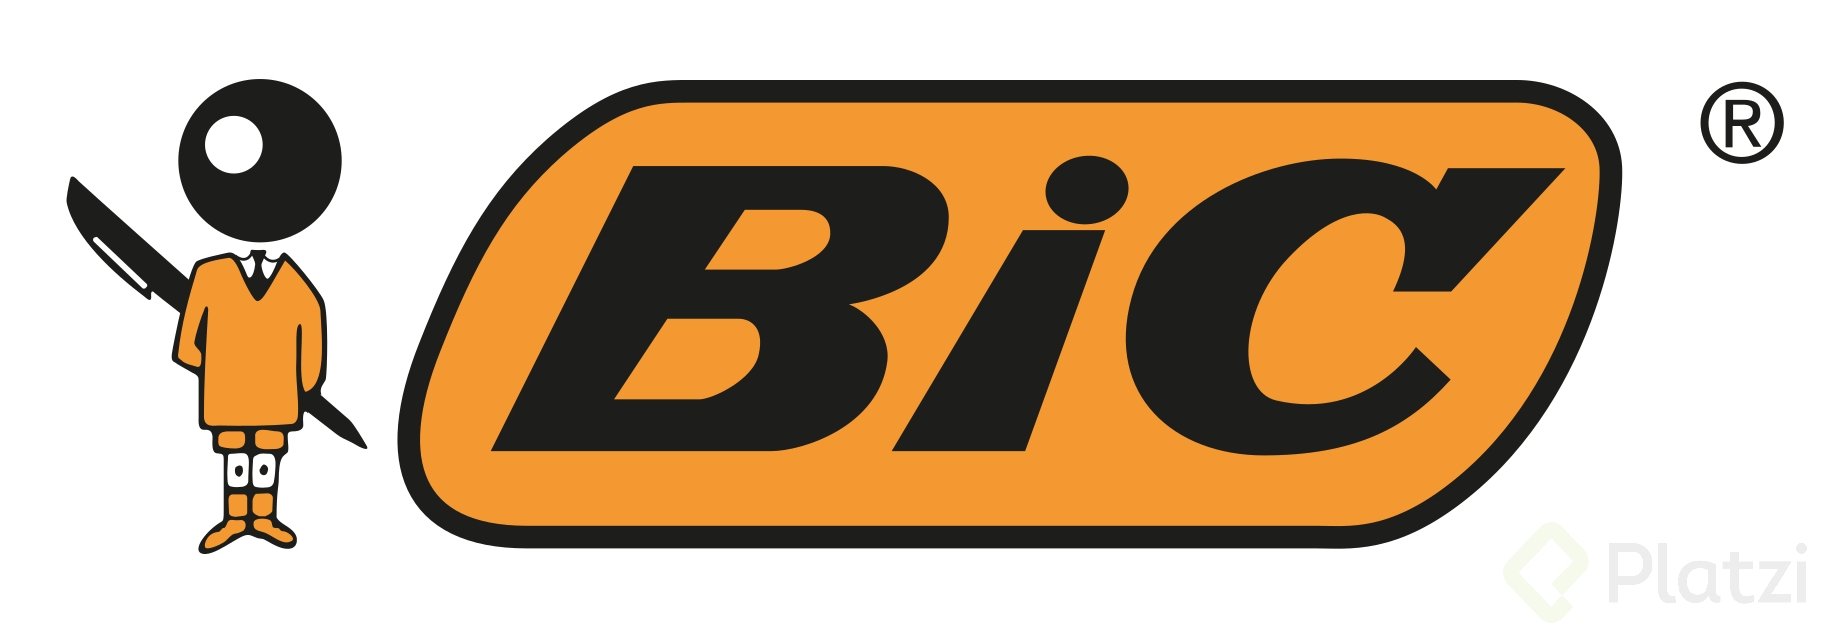 logo_bic.png